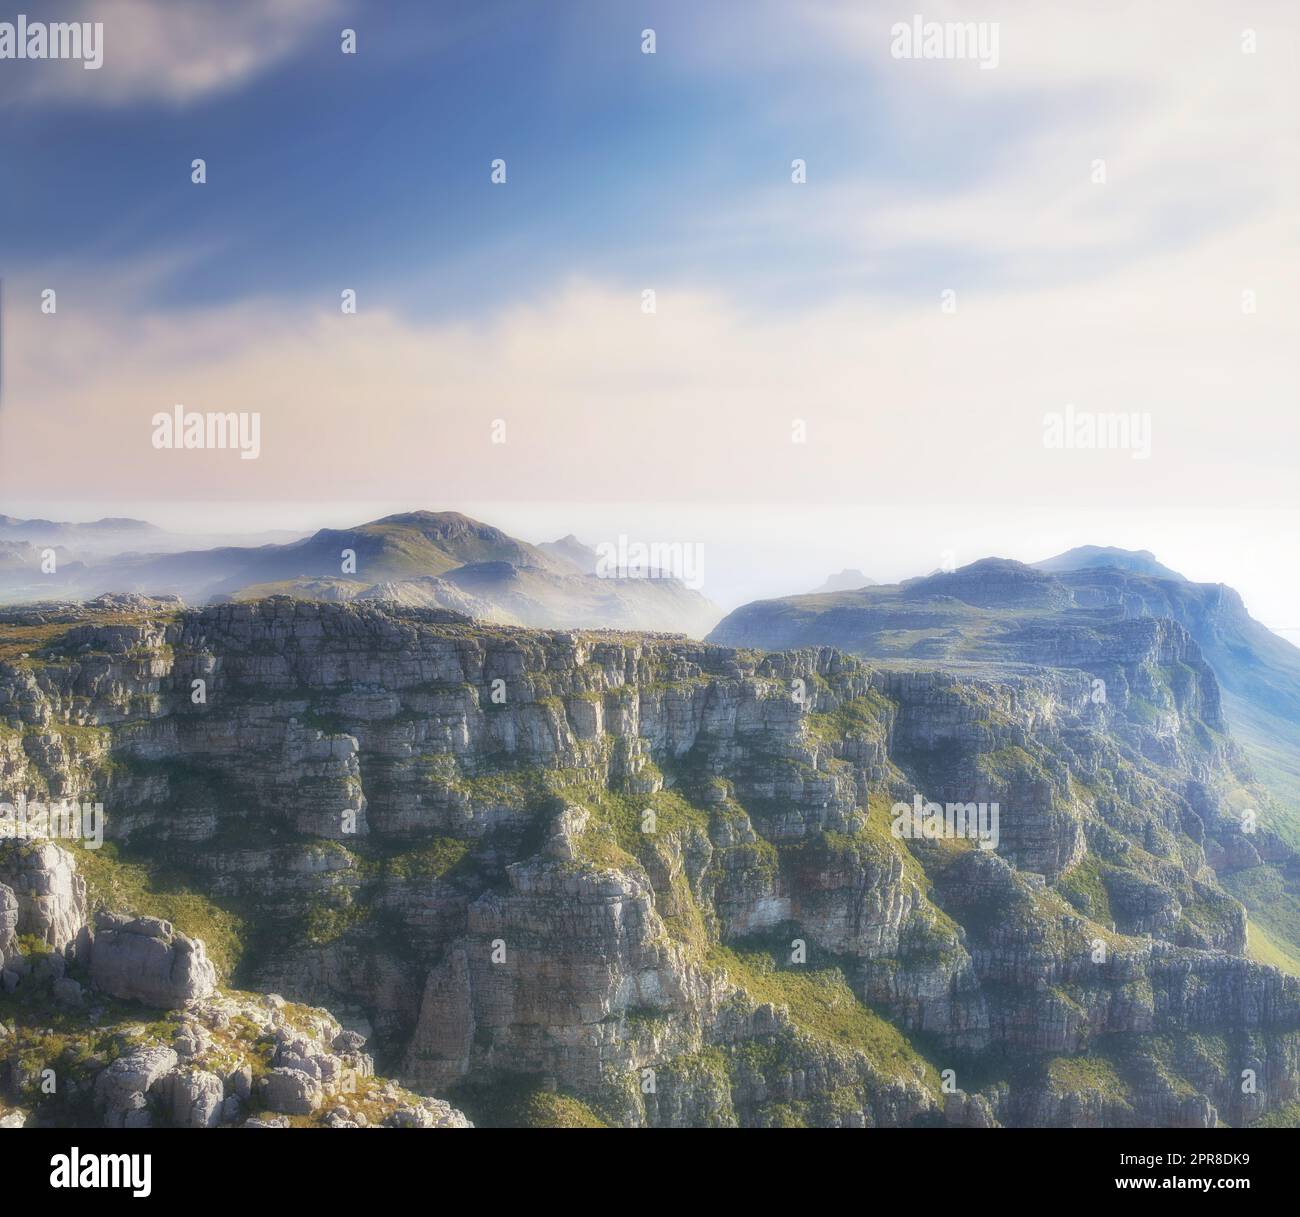 Kopieren Sie Platz mit malerischer Landschaft aus Wolken am Himmel, die den Gipfel des Tafelbergs in Kapstadt an einem nebligen Morgen bedecken. Fantastische Aussicht von hoch über einem felsigen Tal nach einem Gipfel auf einem Berg Stockfoto